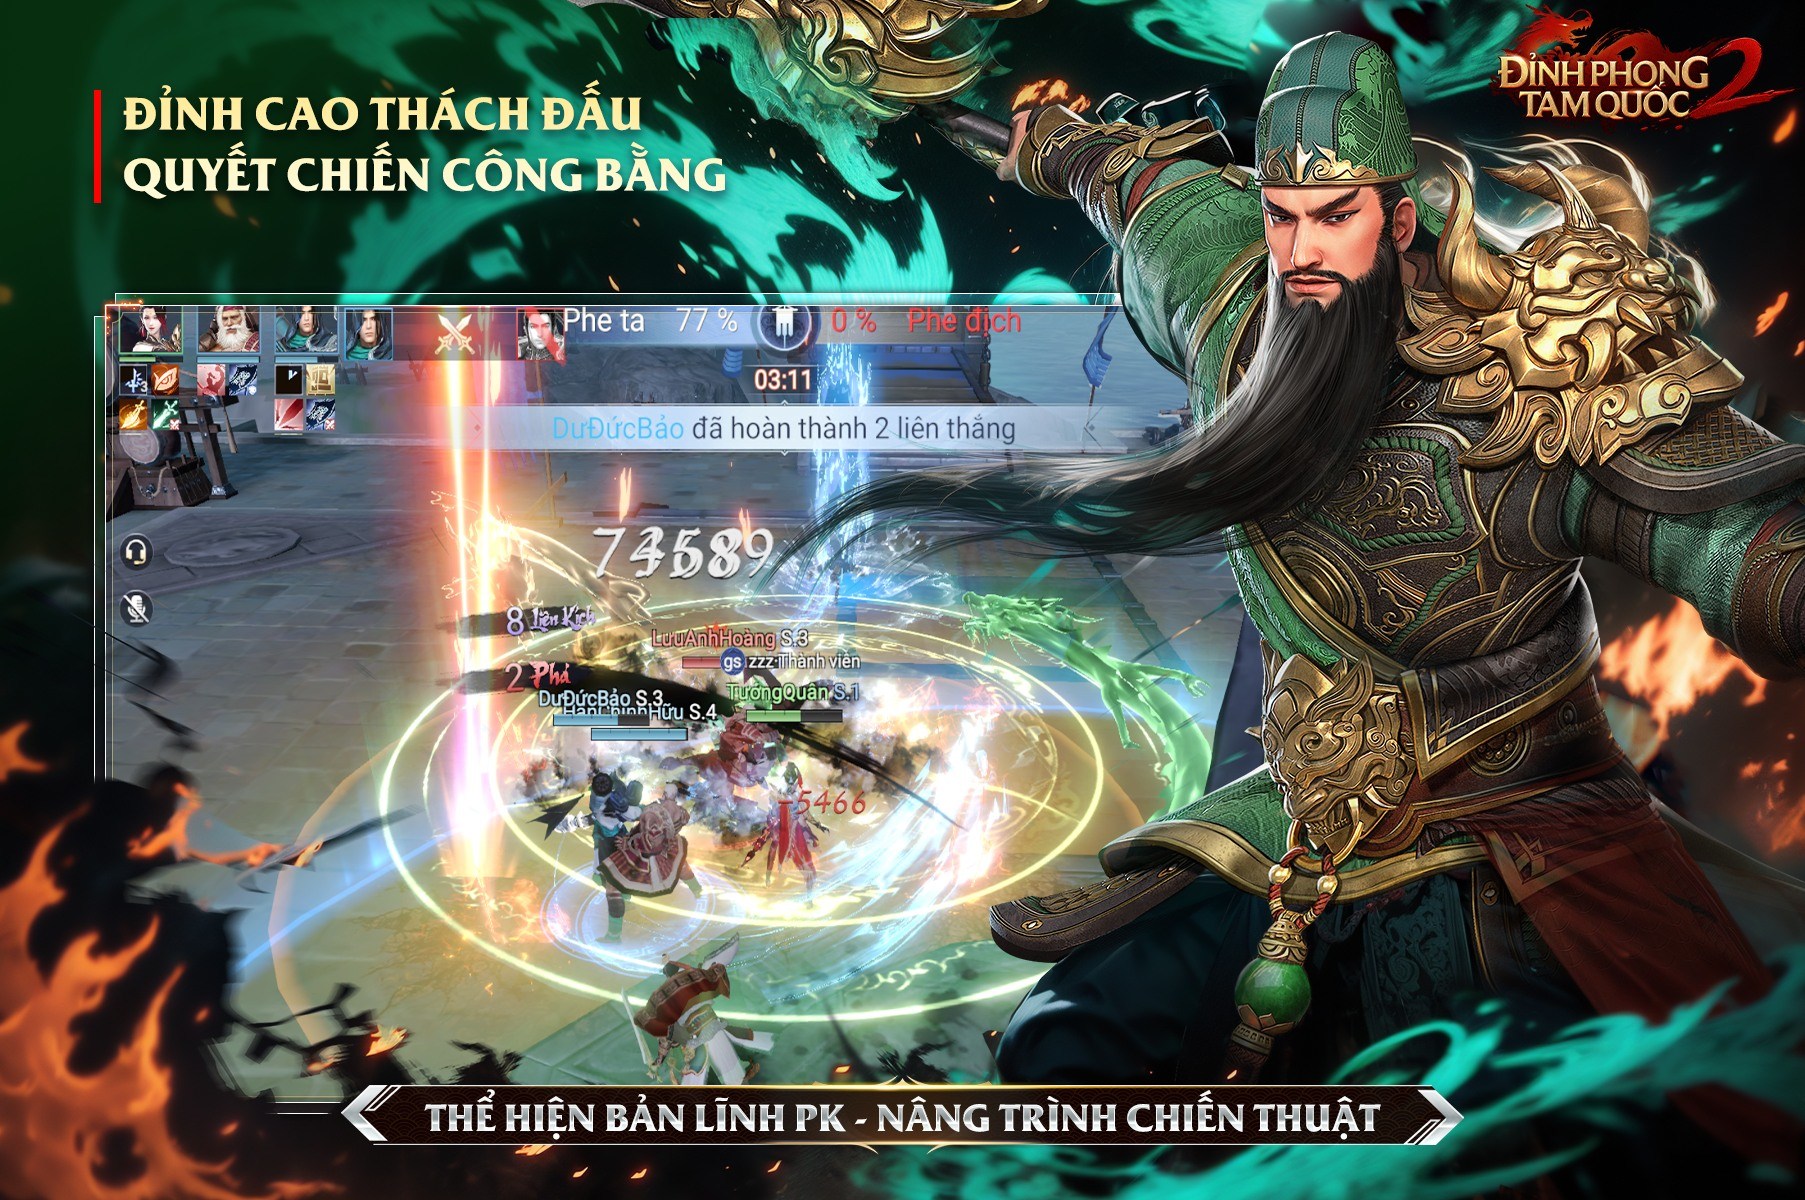 Dynasty Legends 2 sẽ phát hành tại Việt Nam với tên Đỉnh Phong 2 - Tân Tam Quốc